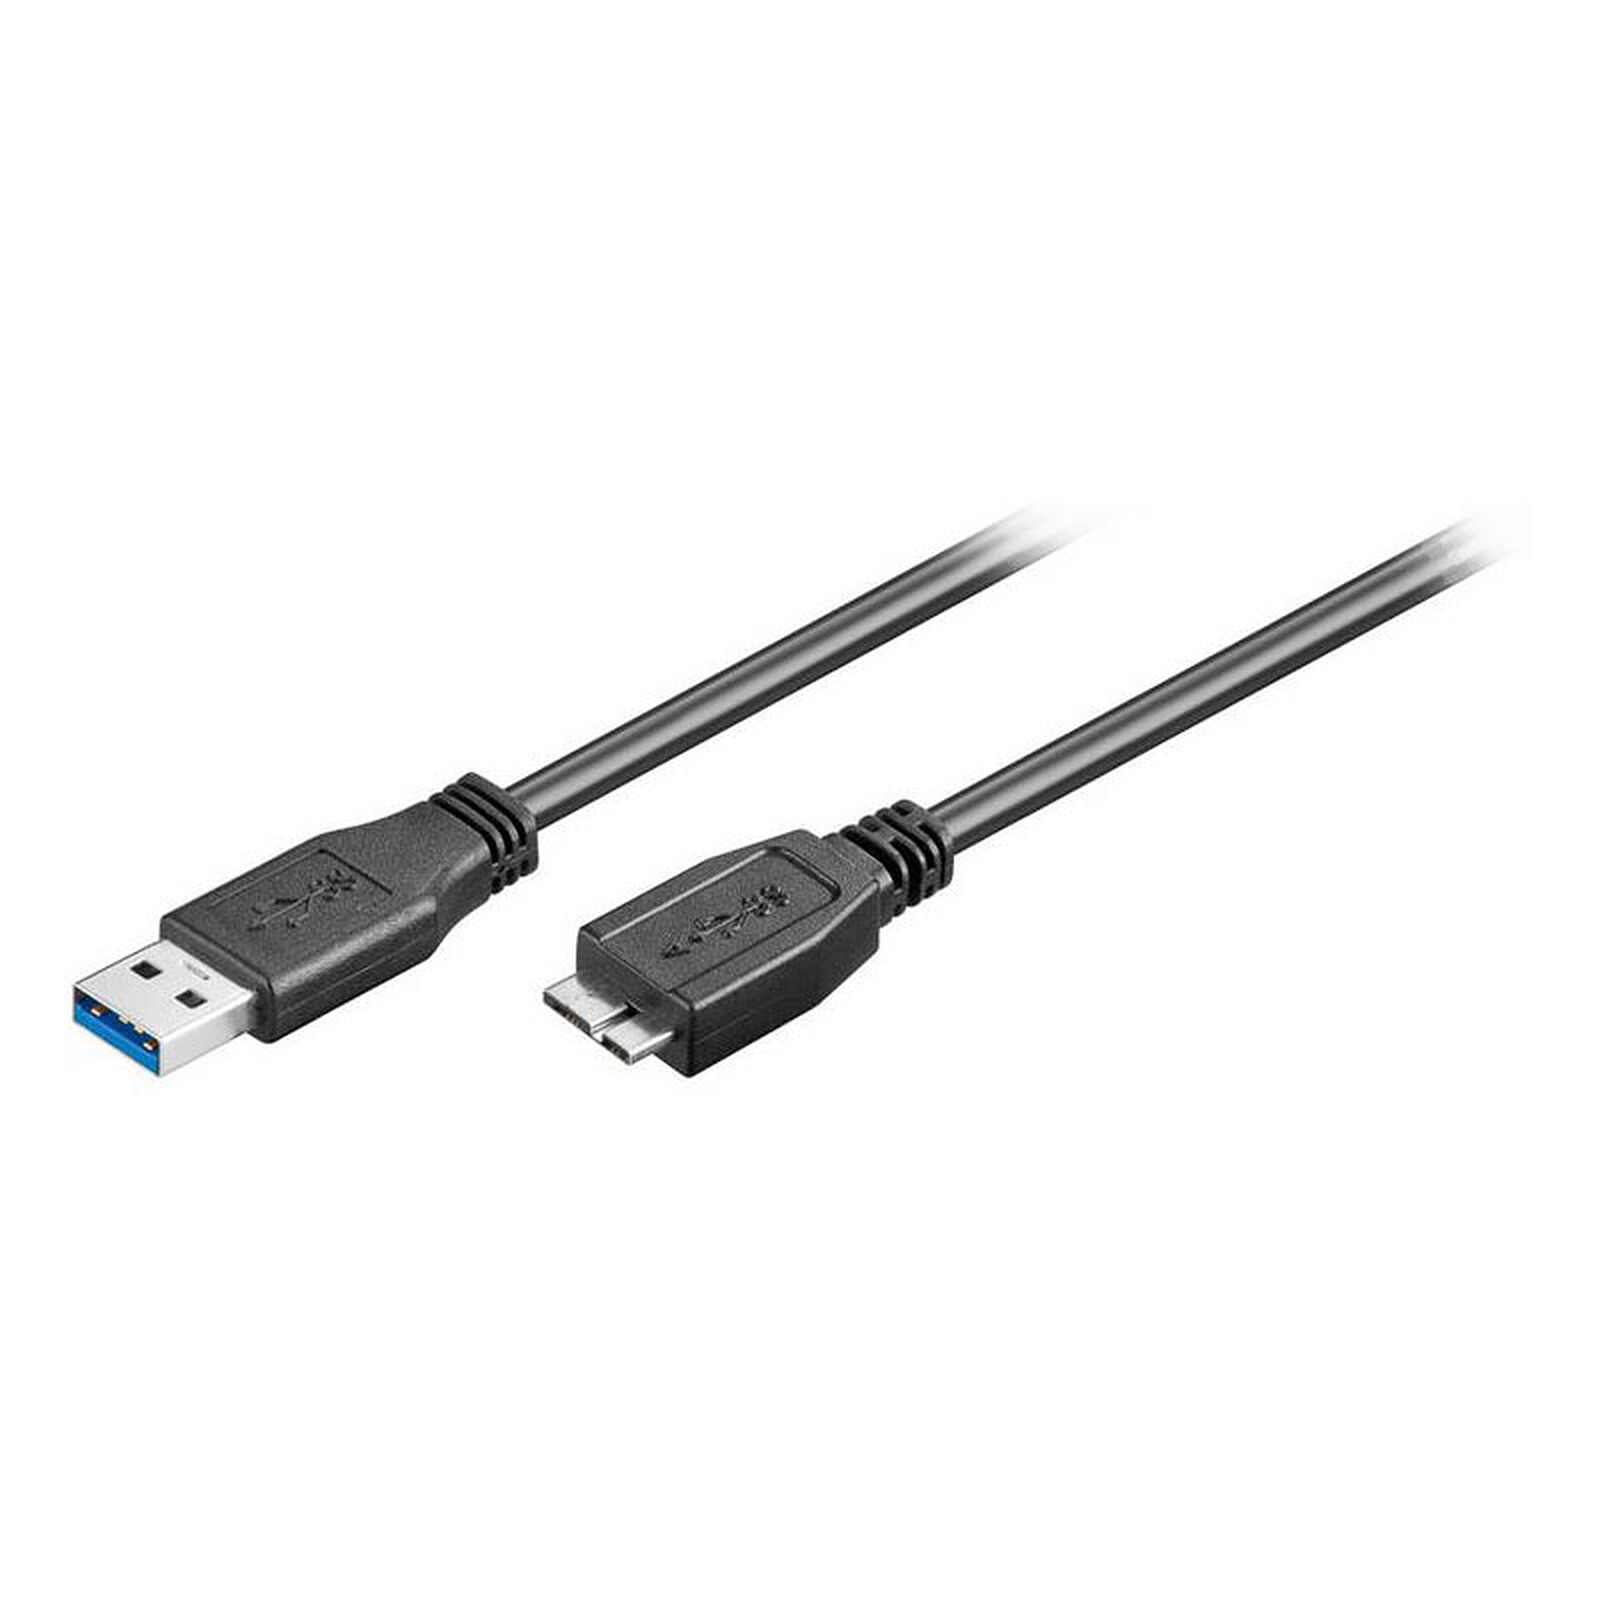 Câble USB 3.0 pour périphérique micro USB (3 mètres) - USB - Garantie 3 ans  LDLC